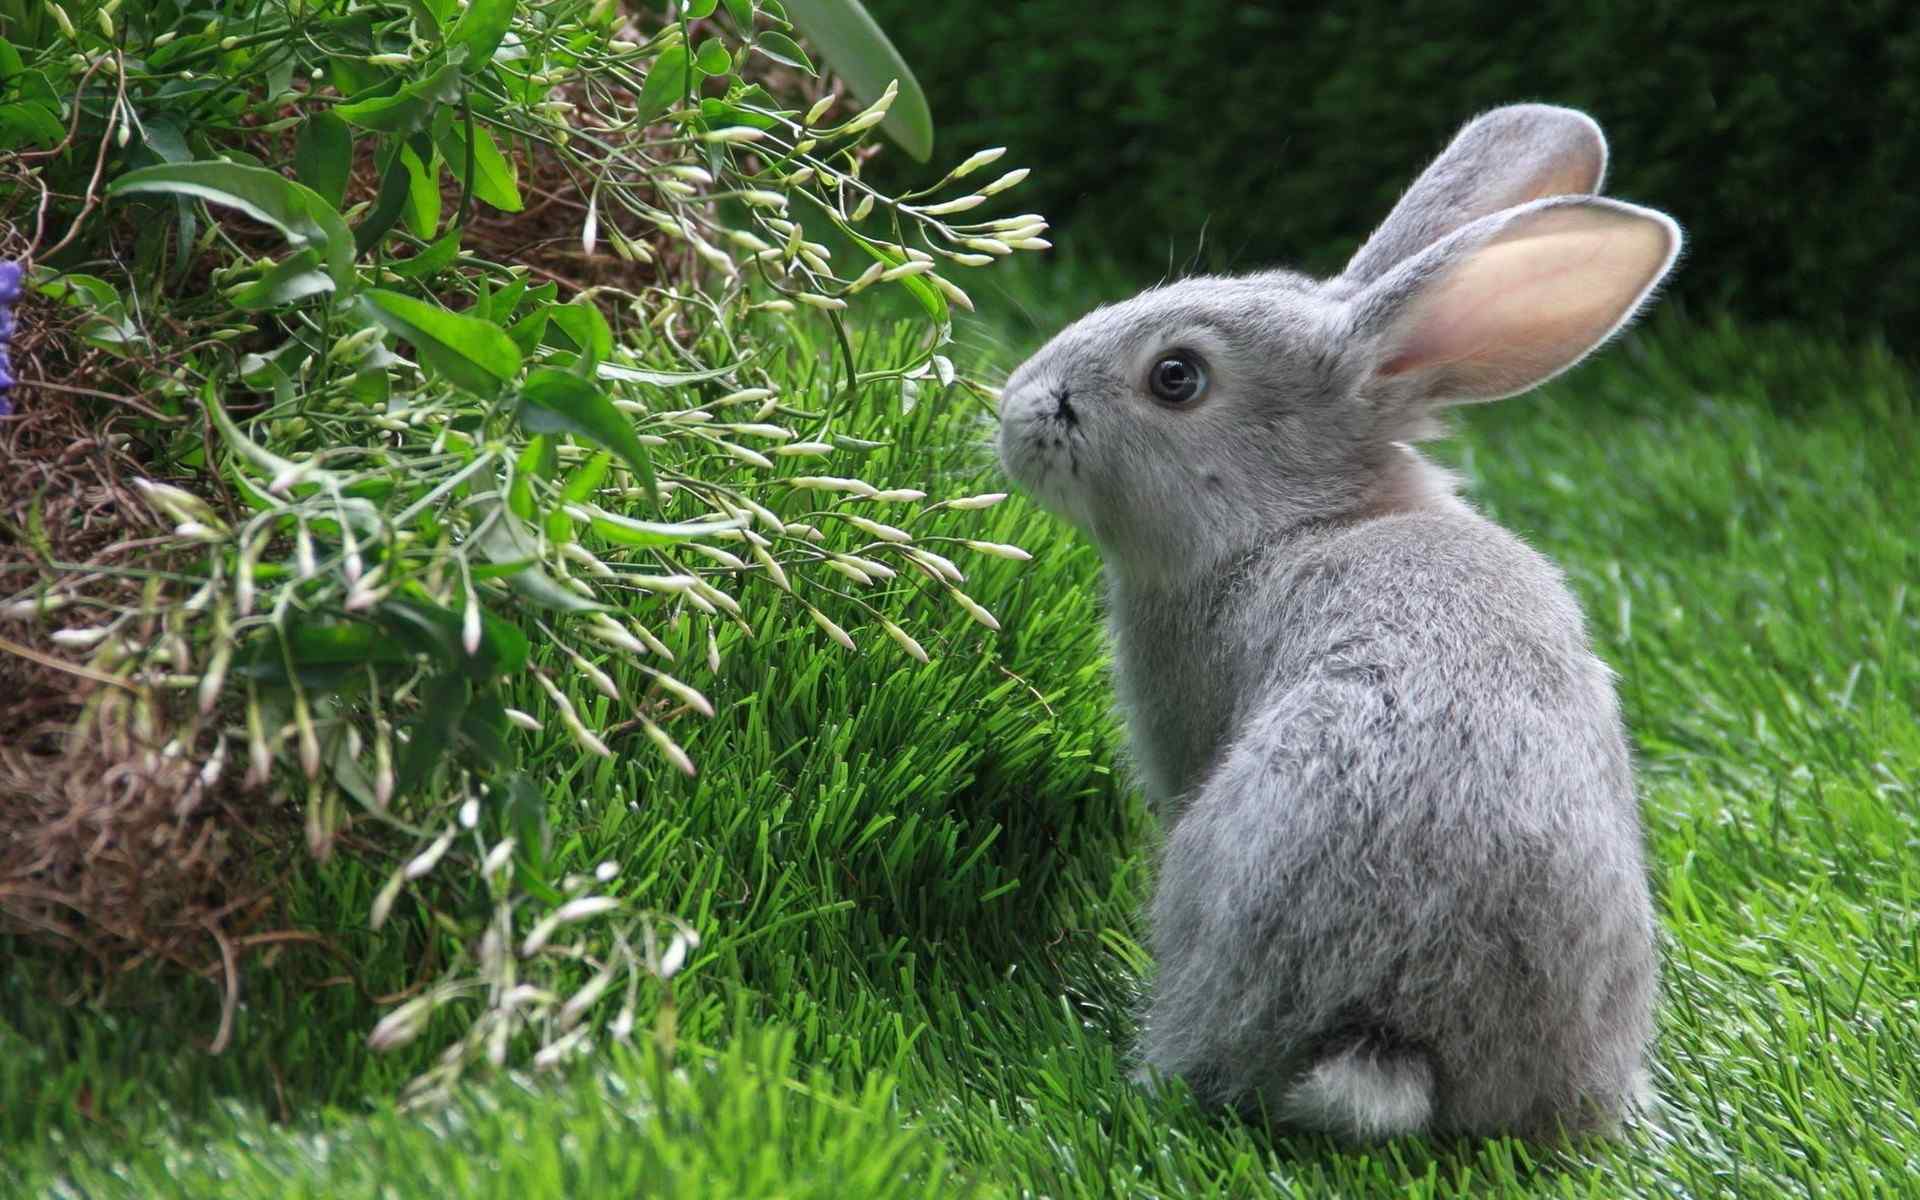 温顺可爱的动物之小兔子高清壁纸